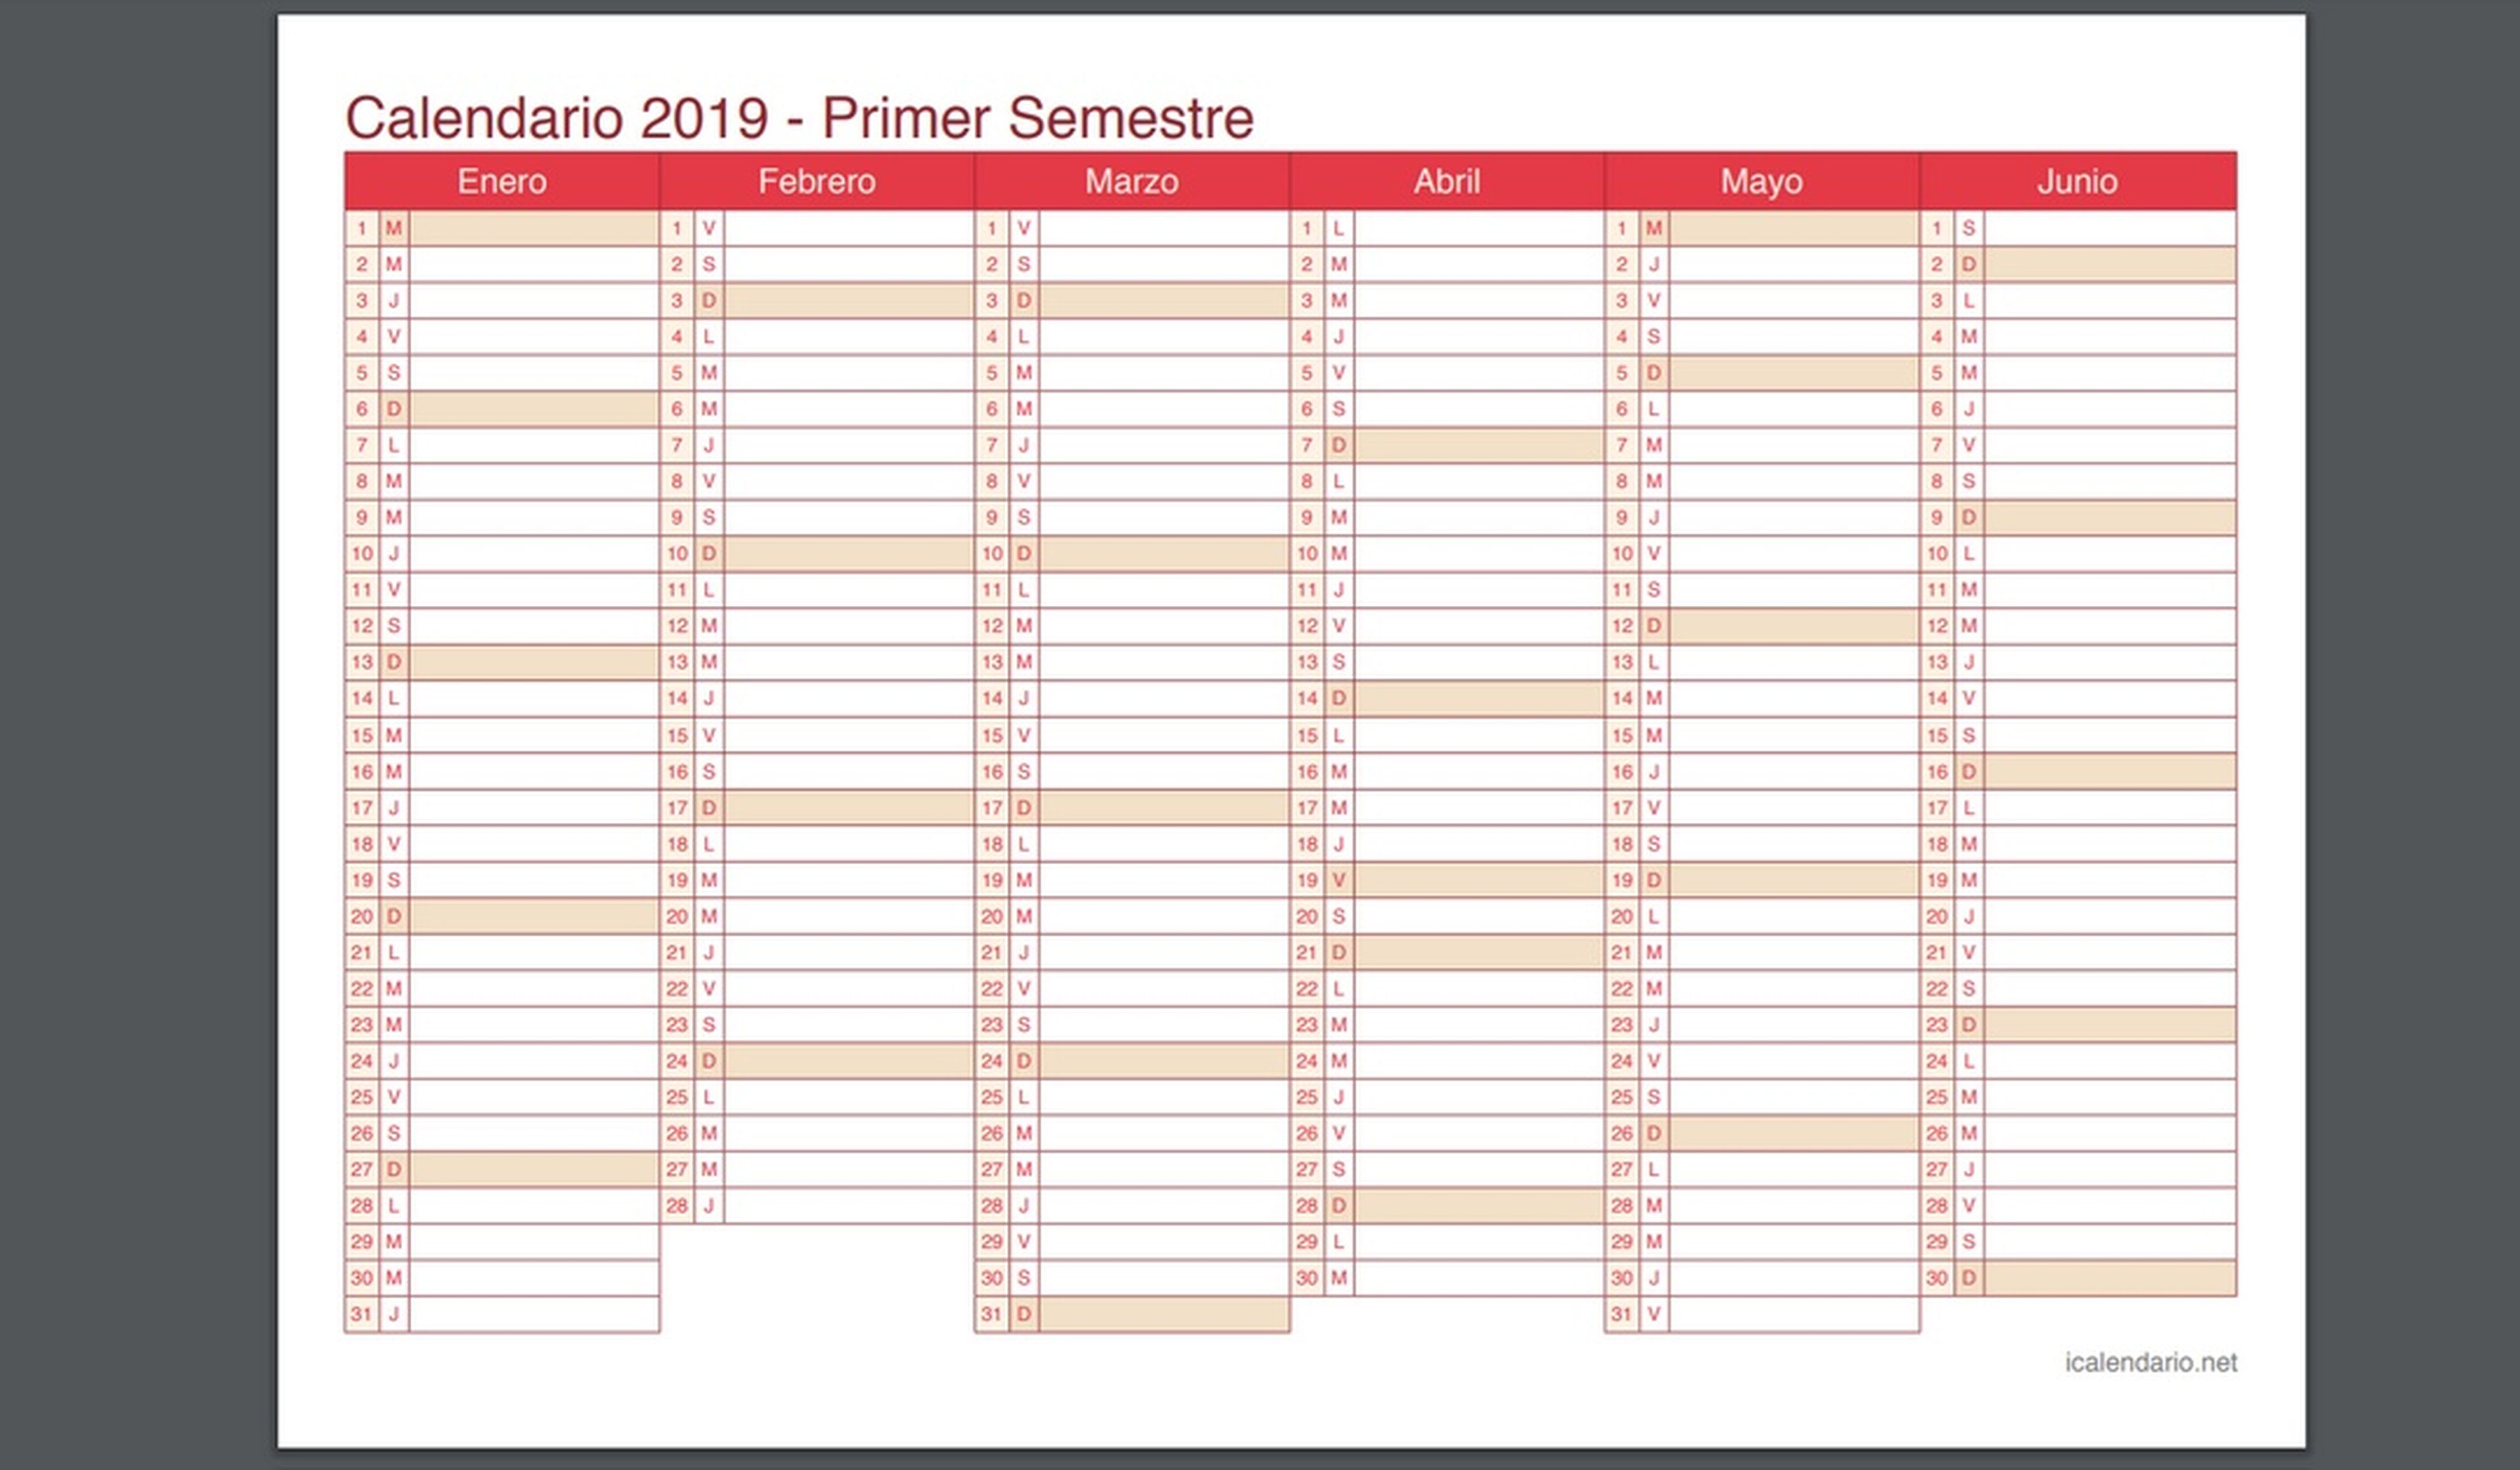 Calendario semestral